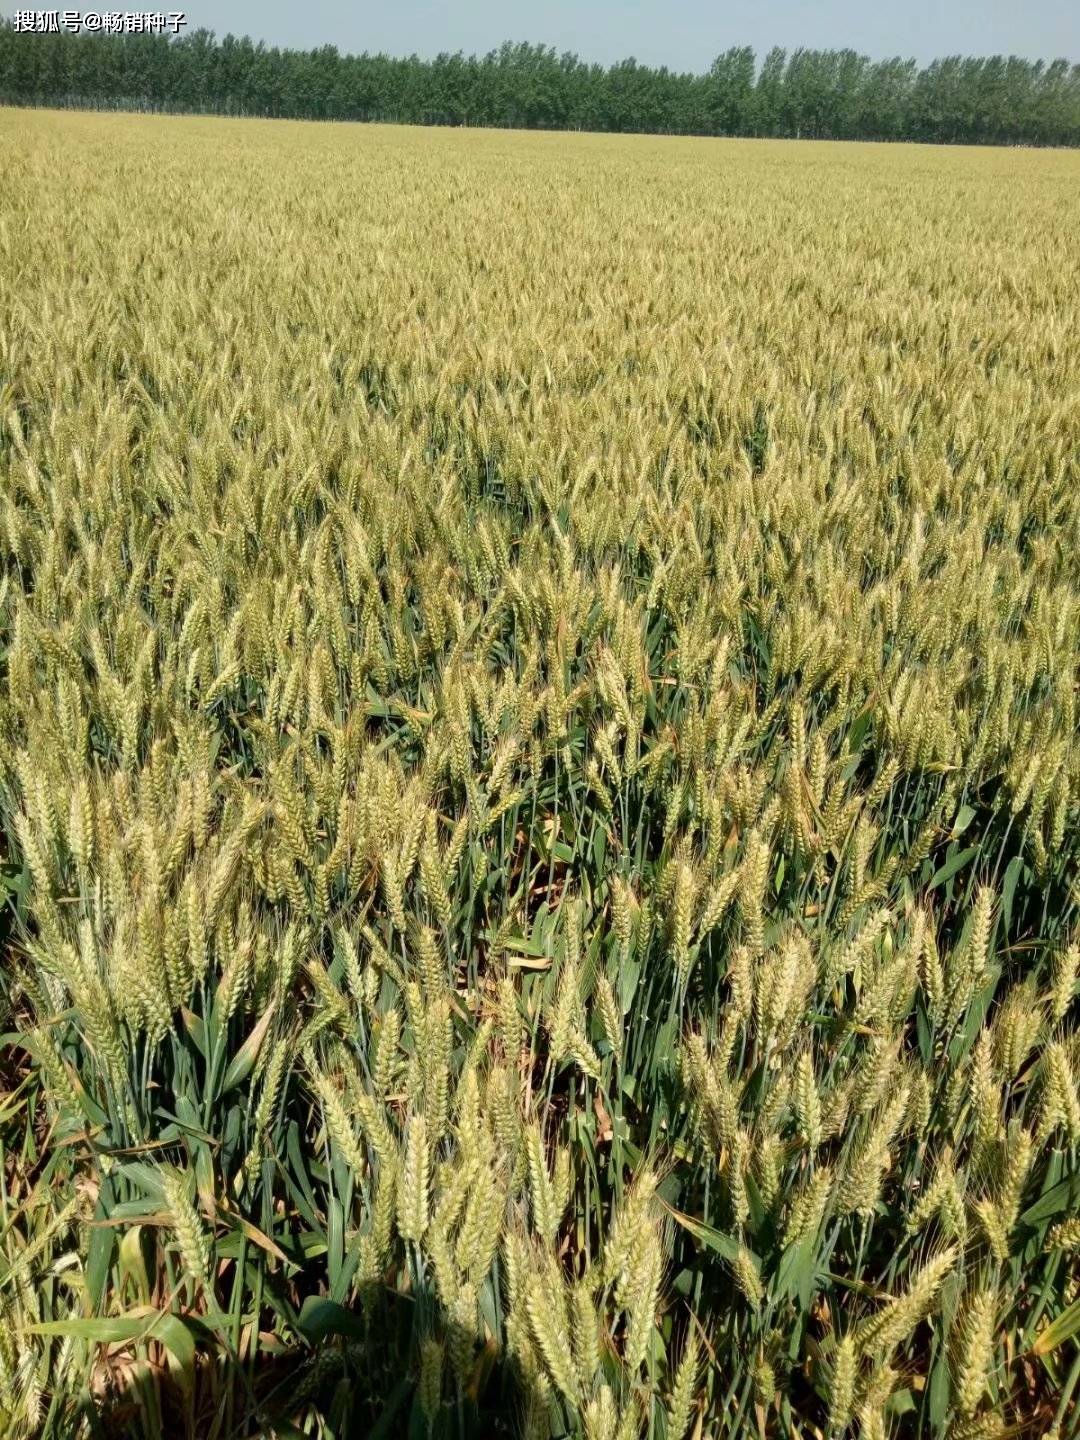 2020高产小麦品种产_颍上县2020年秋种优质专用小麦生产实施方案